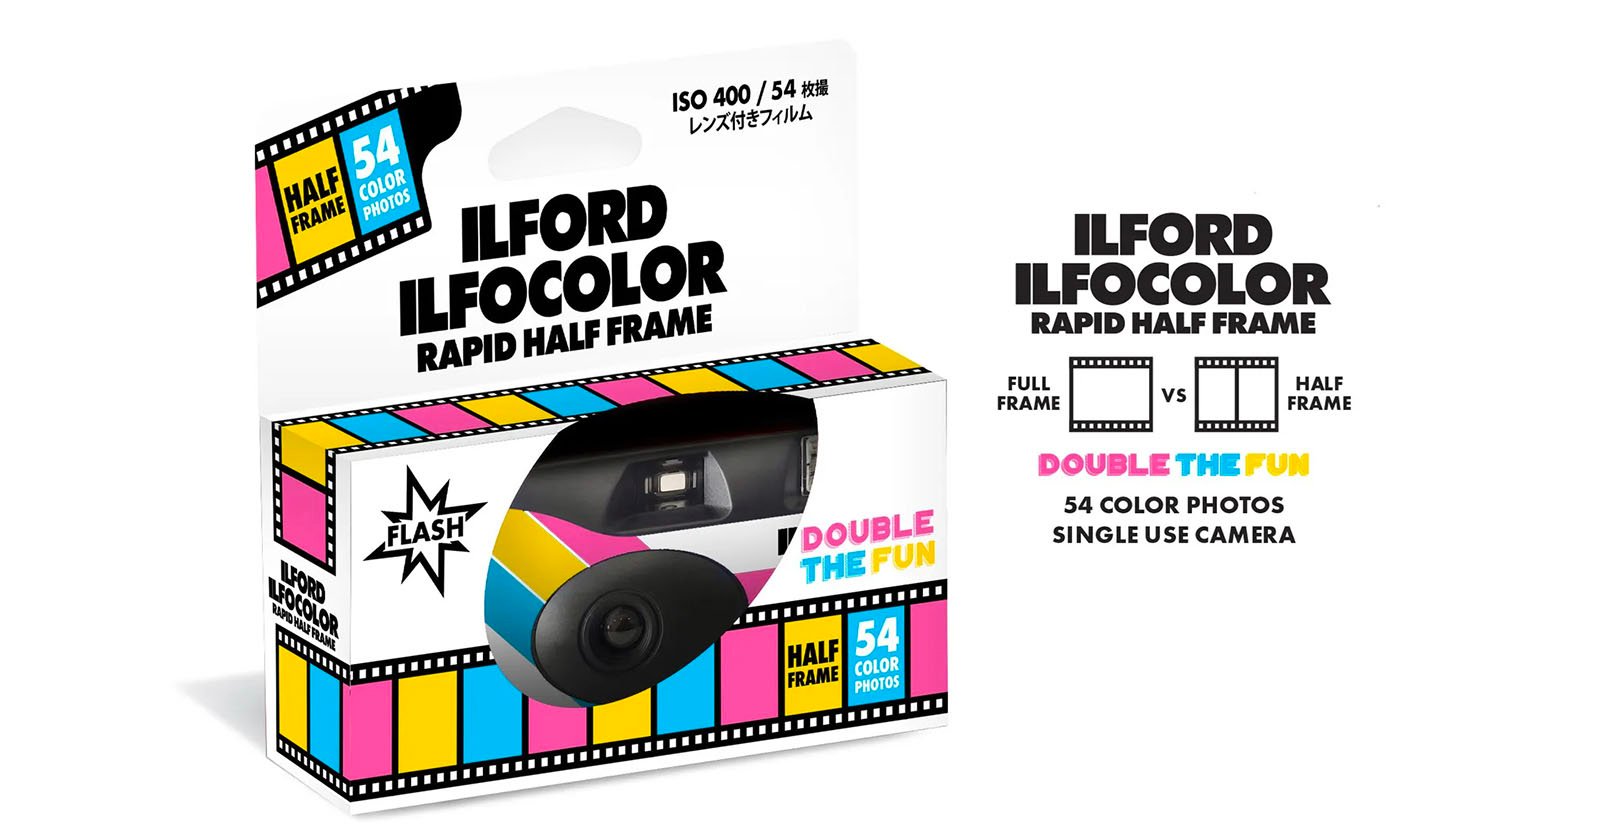  ilford disposable camera ilfocolor rapid half 